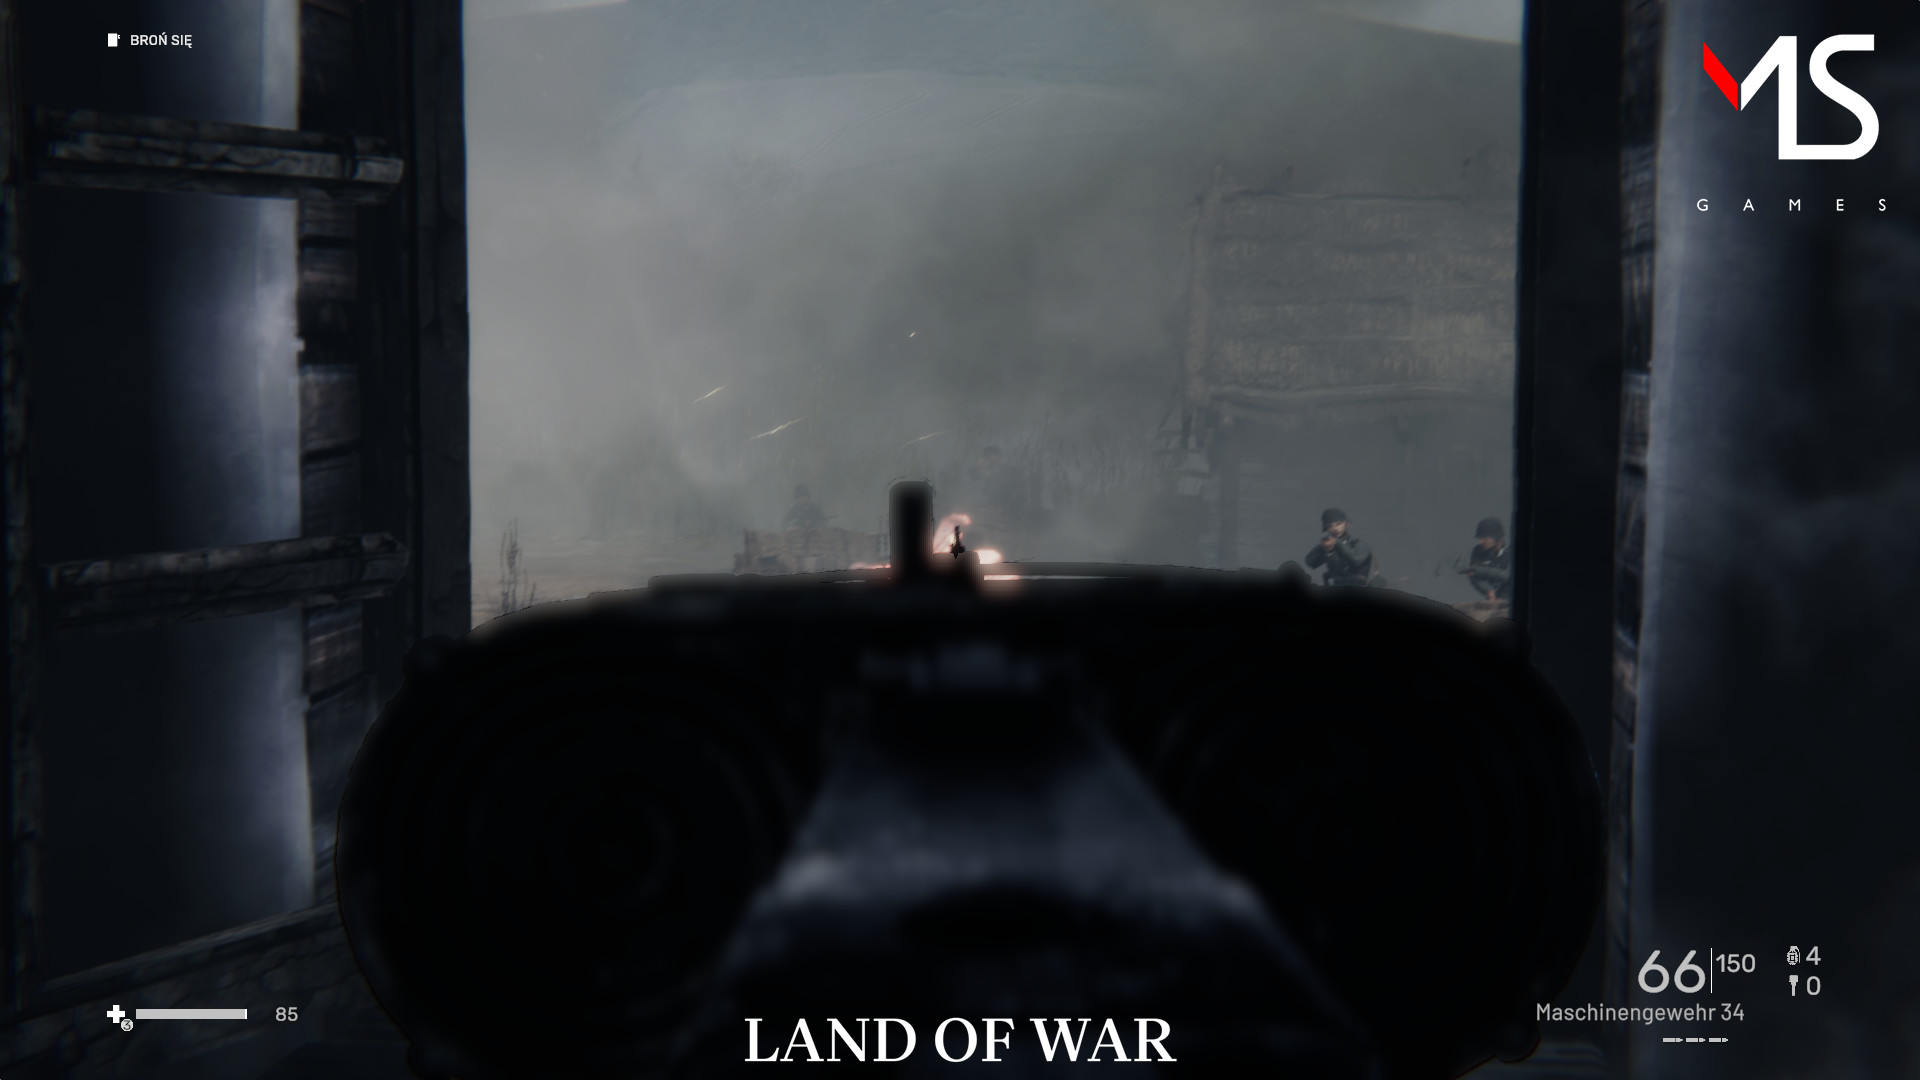 Land of War - The Beginning screenshot